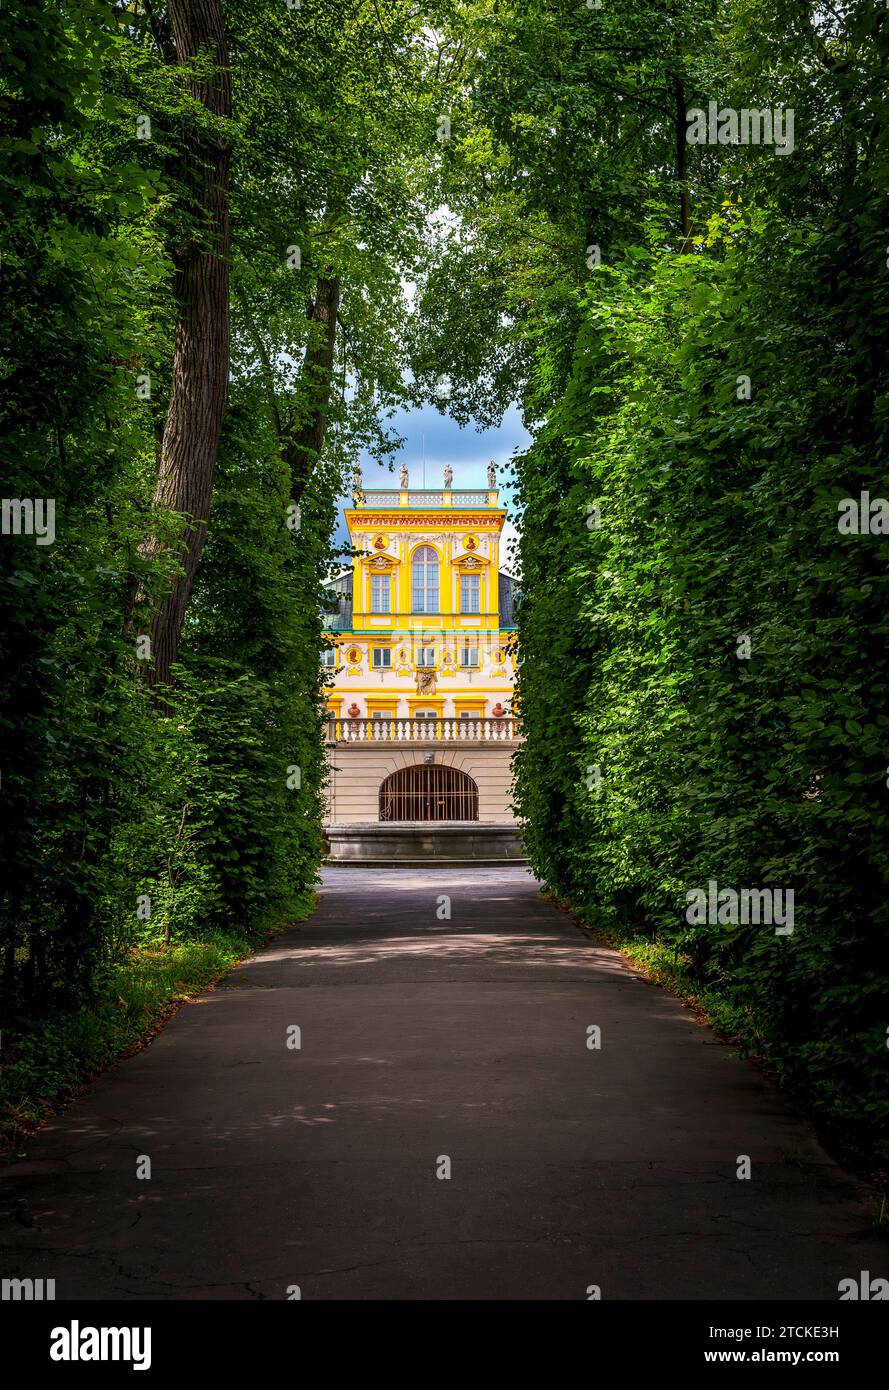 Der Königspalast in Wilanow ist eines der bedeutendsten Kulturdenkmäler Polens. Waszawa, Polen. Stockfoto